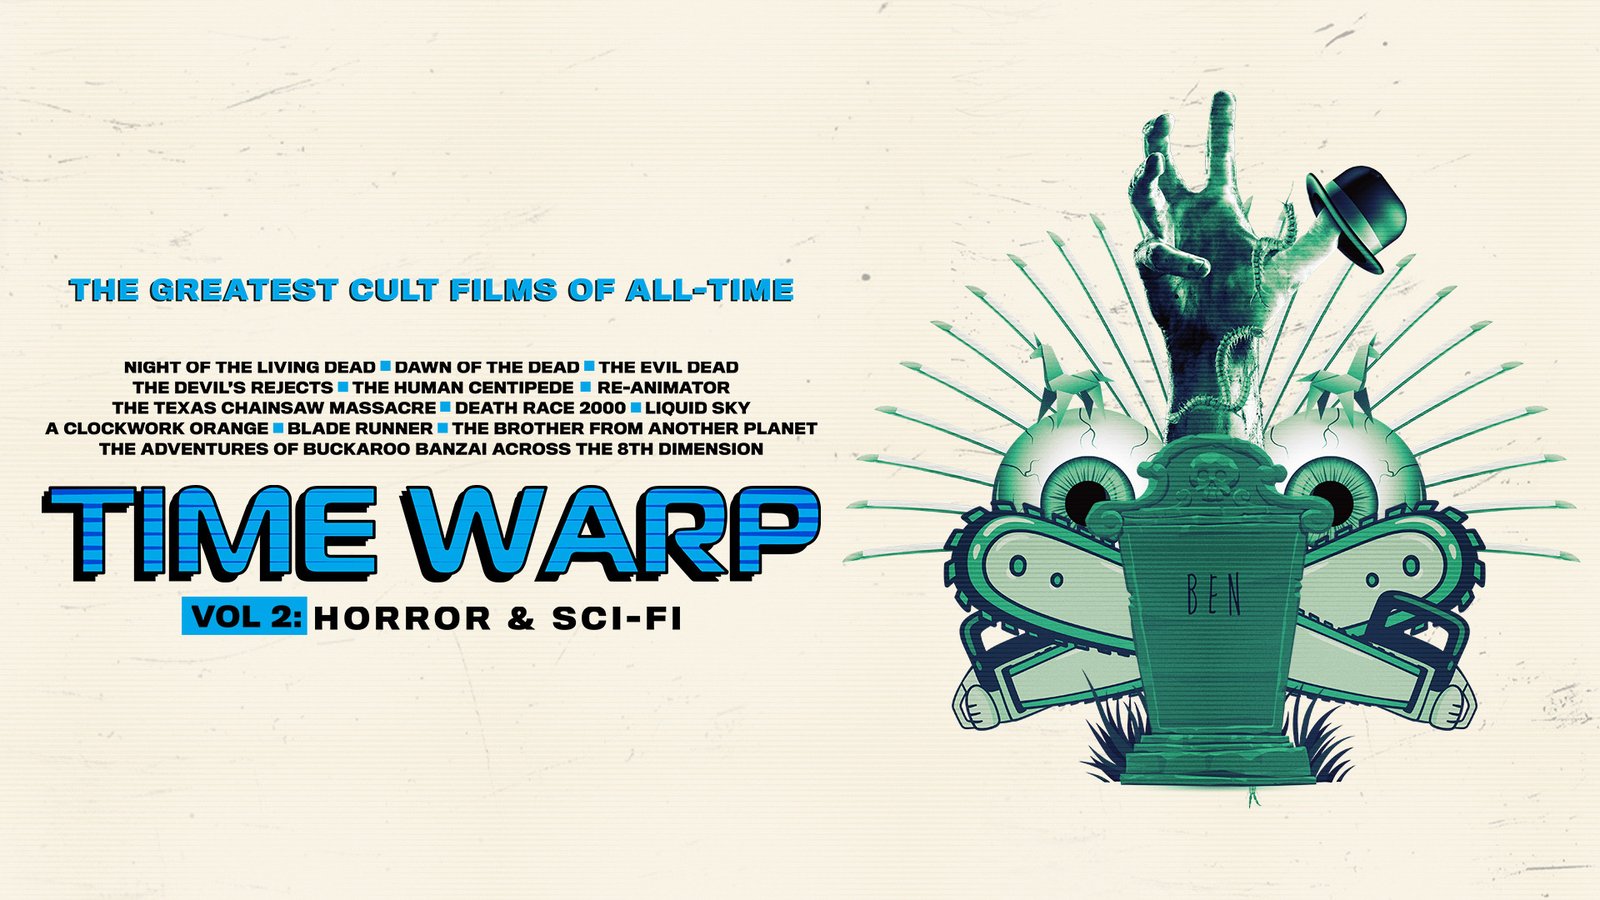 Time Warp Vol 2 – Horror & Sci-Fi